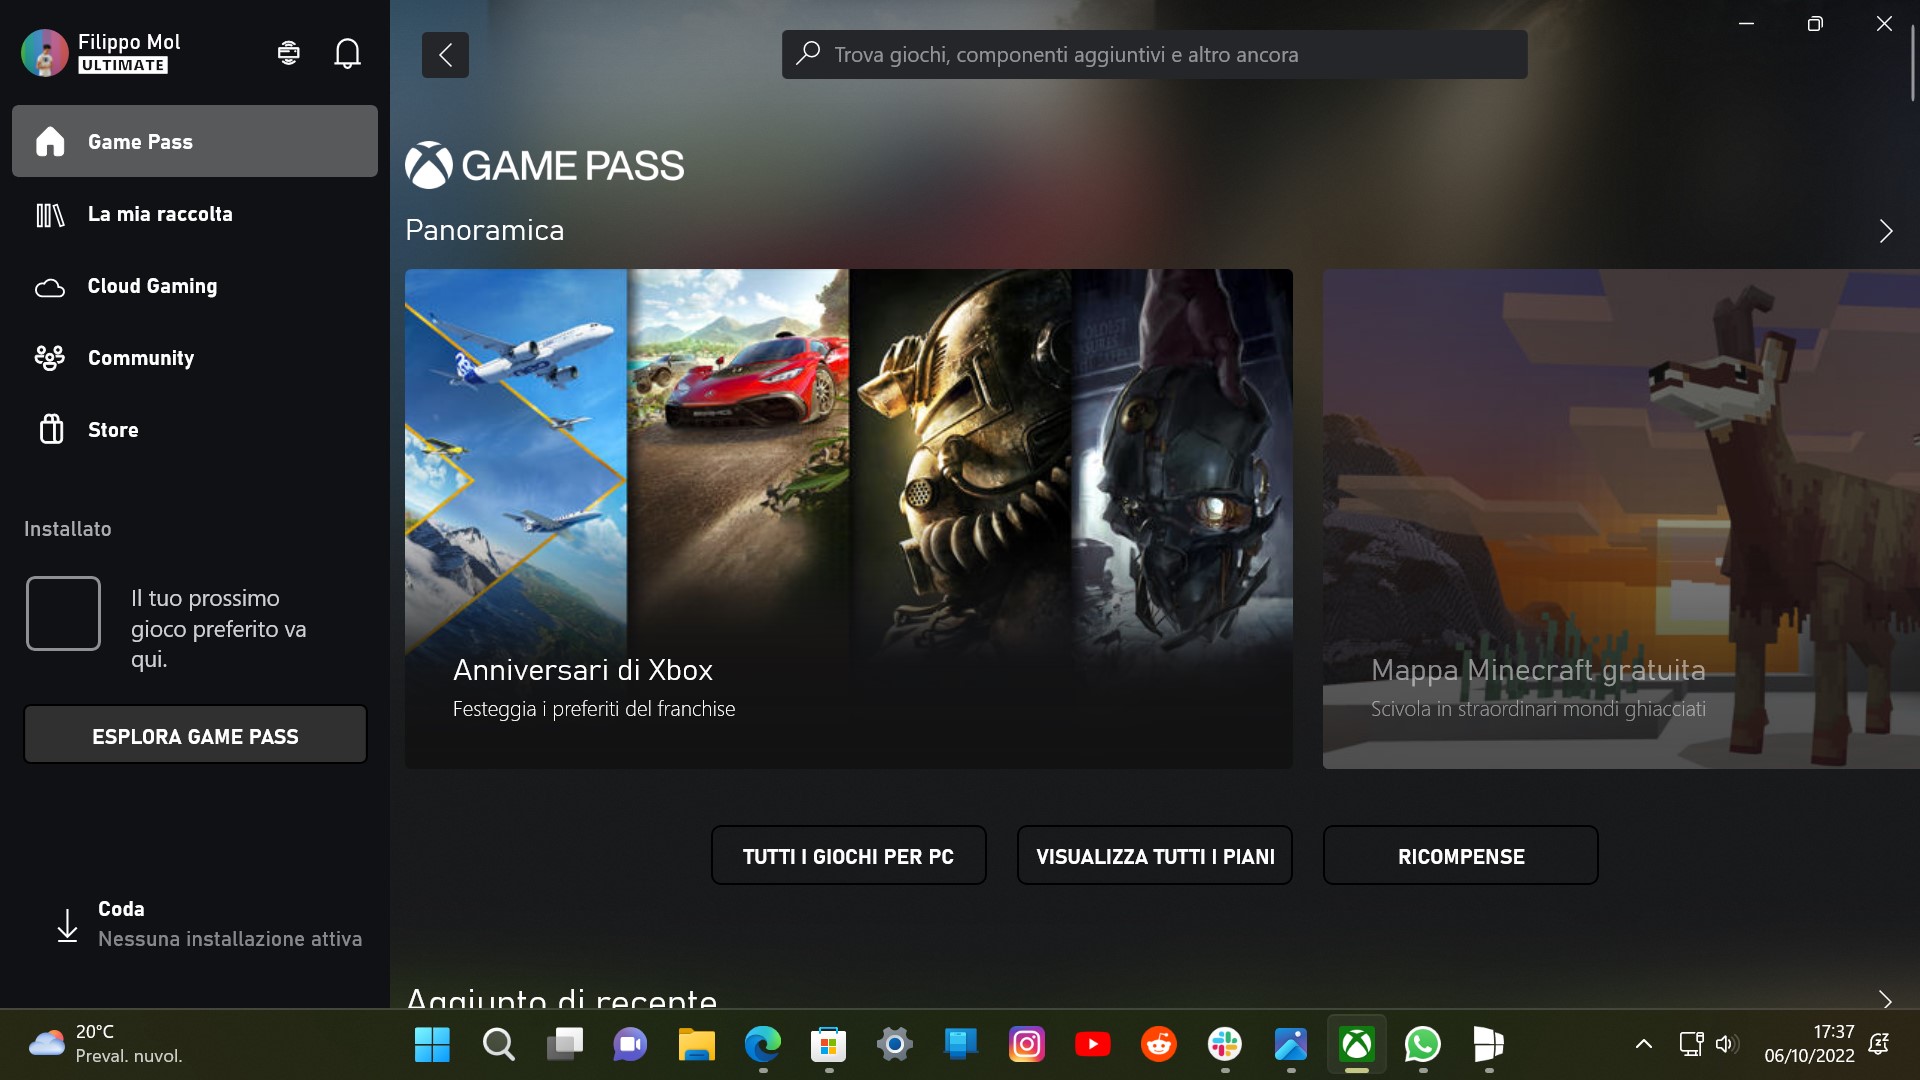 Xbox per Windows - Nuovo design per la panoramica di Game Pass